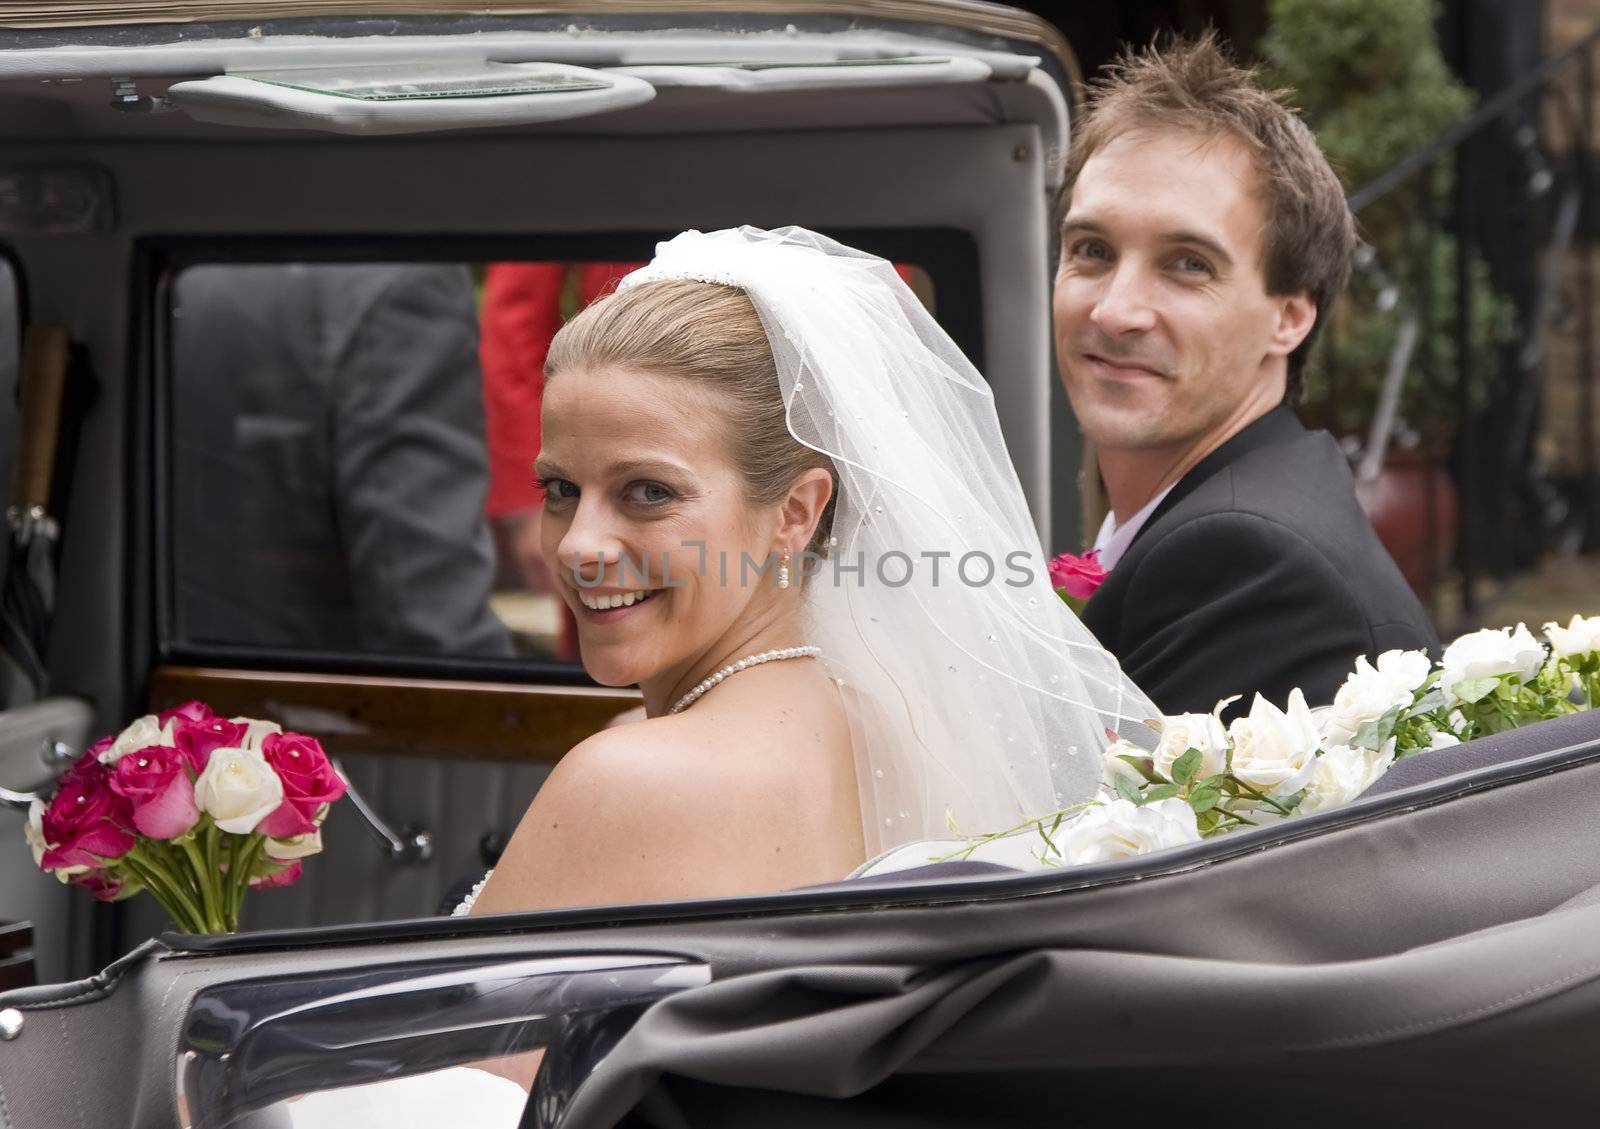 Bride and groom arrive at reception in vintage wedding car by Veneratio